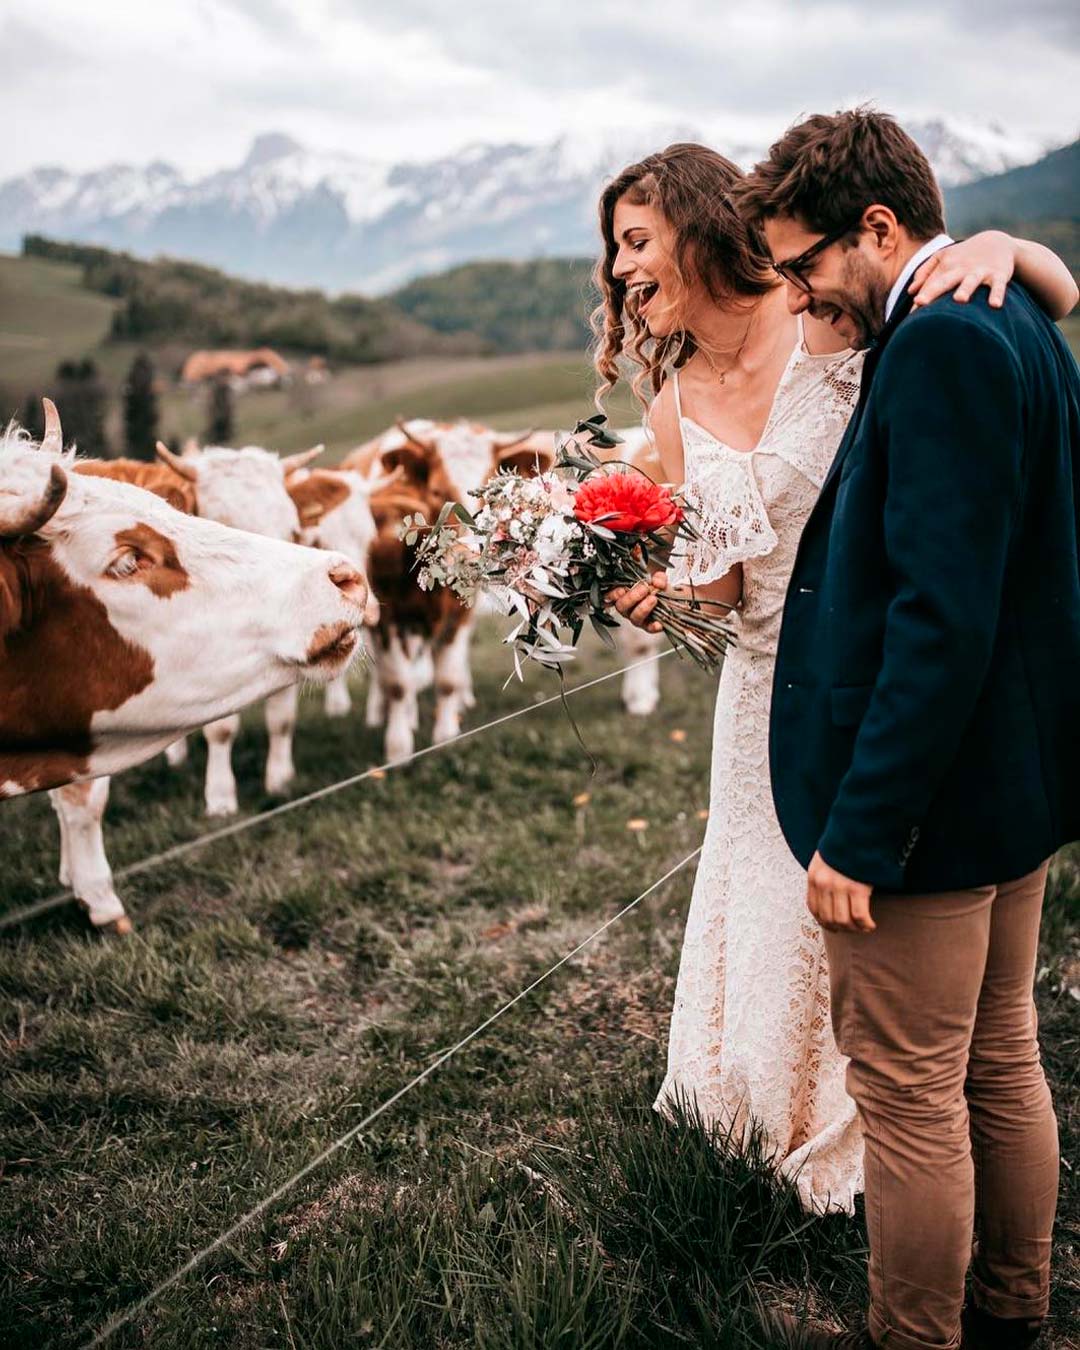 modern love country songs outdoor bride groom